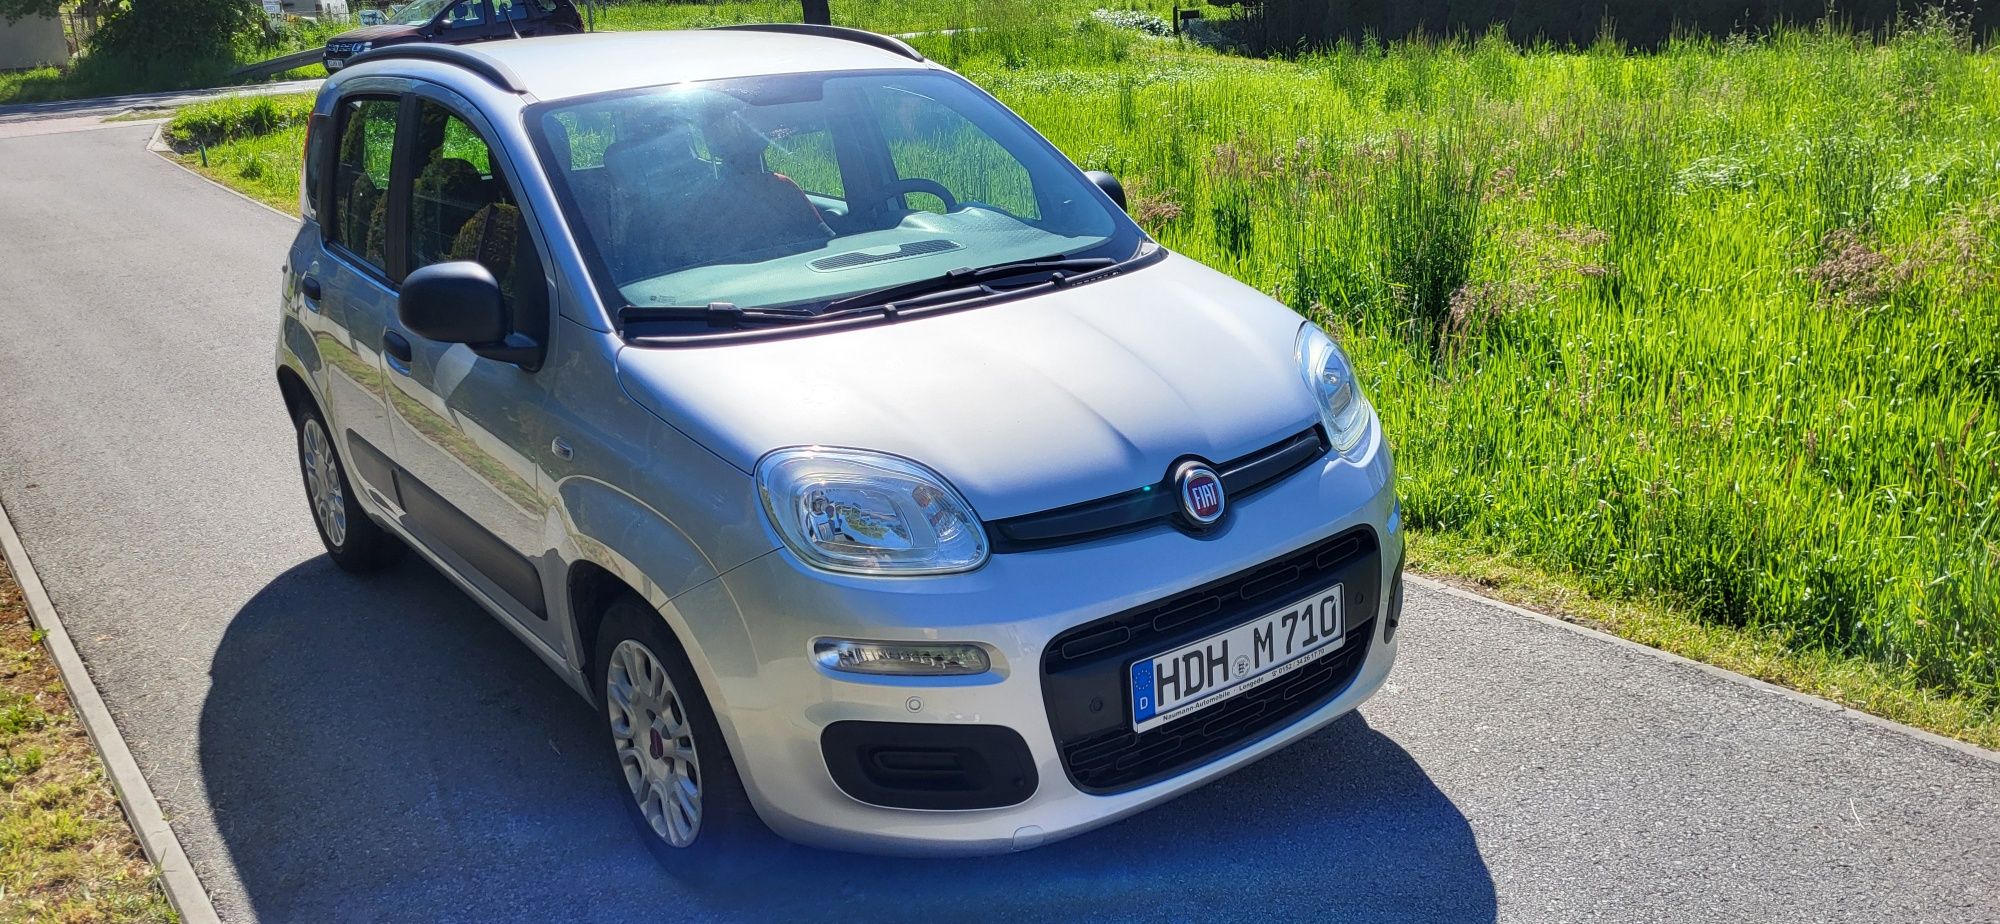 Fiat Panda 1.2 Benzyna 2014r Klima,Parktronic